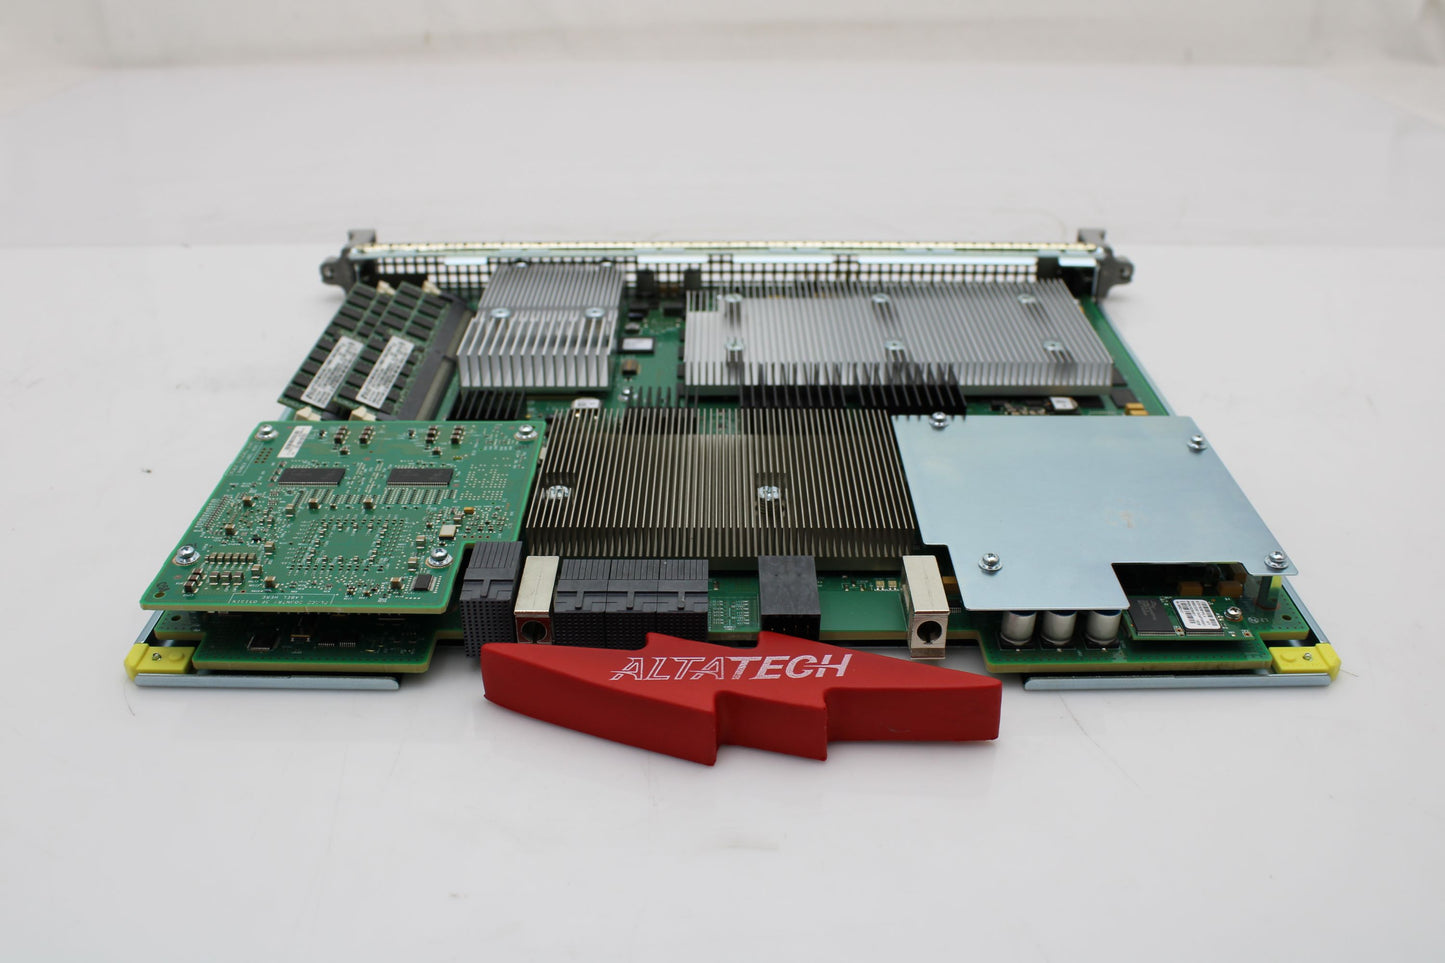 Cisco ASR1000-ESP40 ASR1000-ESP40 Cisco ASR 1000 Series 40-Gbps Embedded Services Processor, Used